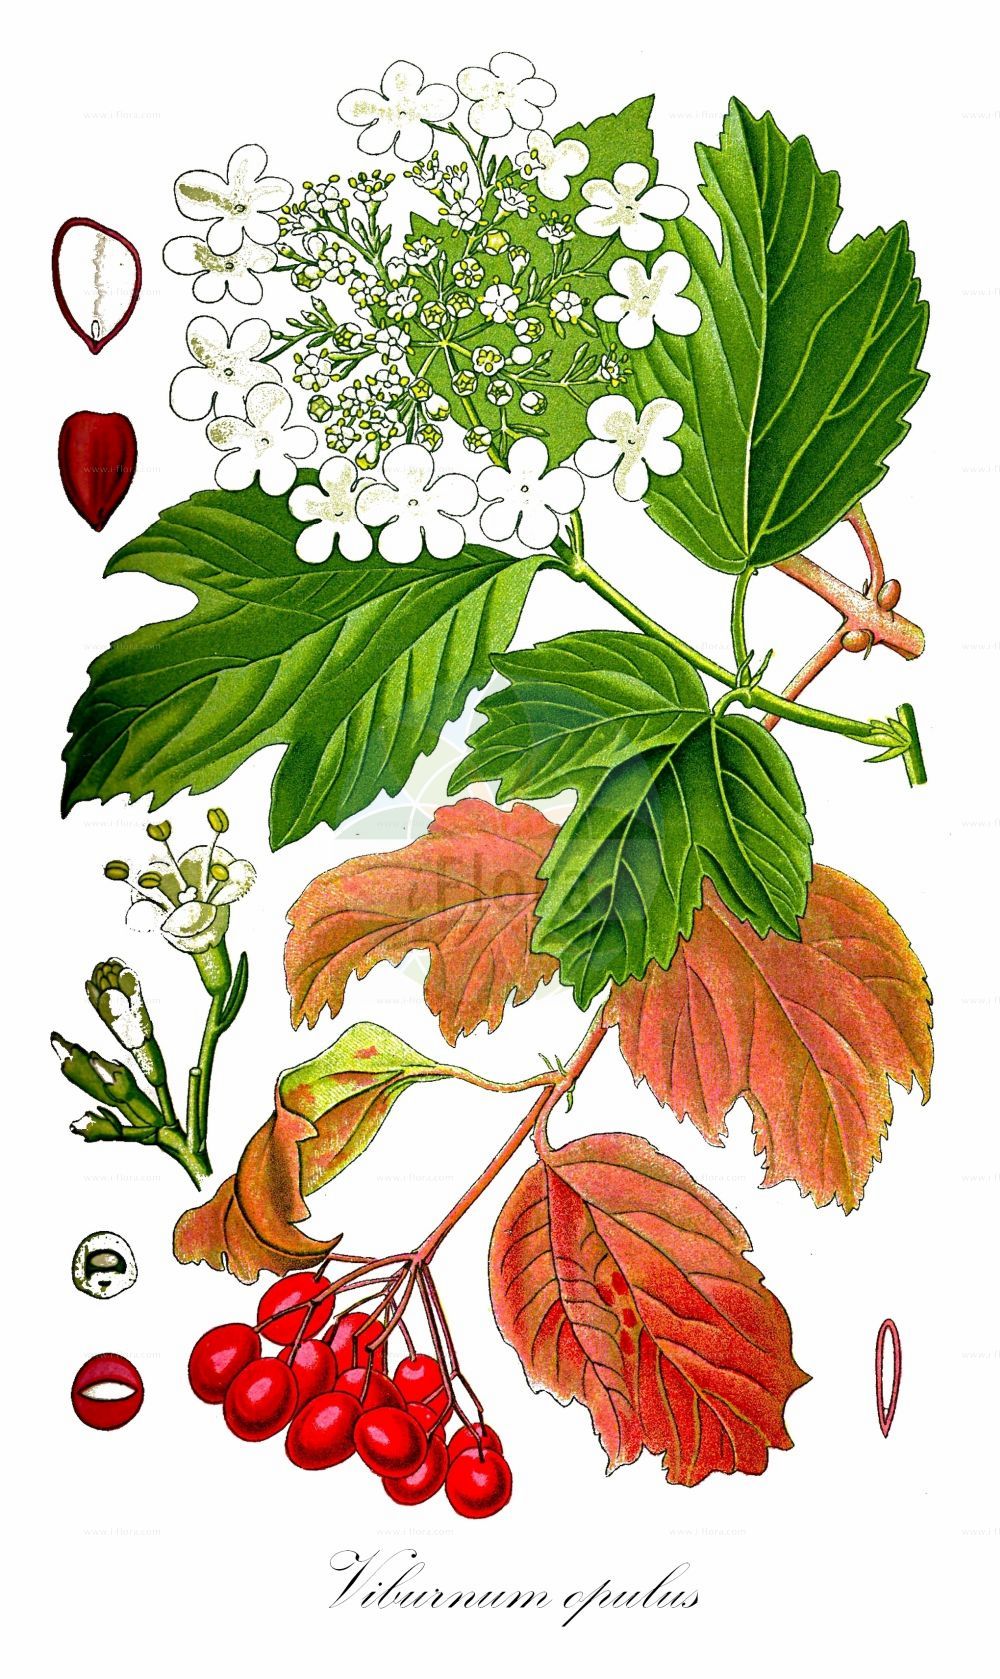 Historische Abbildung von Viburnum opulus (Gewöhnlicher Schneeball - Guelder-rose). ---- Historical Drawing of Viburnum opulus (Gewöhnlicher Schneeball - Guelder-rose).(Viburnum opulus,Gewöhnlicher Schneeball,Guelder-rose,Viburnum opulus,Gewoehnlicher Schneeball,Wasser-Holunder,Wasser-Schneeball,Guelder-rose,European Cranberrybush,Snowball Tree,Water Elder,Viburnum,Schneeball,Viburnum,Adoxaceae,Moschuskrautgewächse,Adoxa family,Thomé (1885))